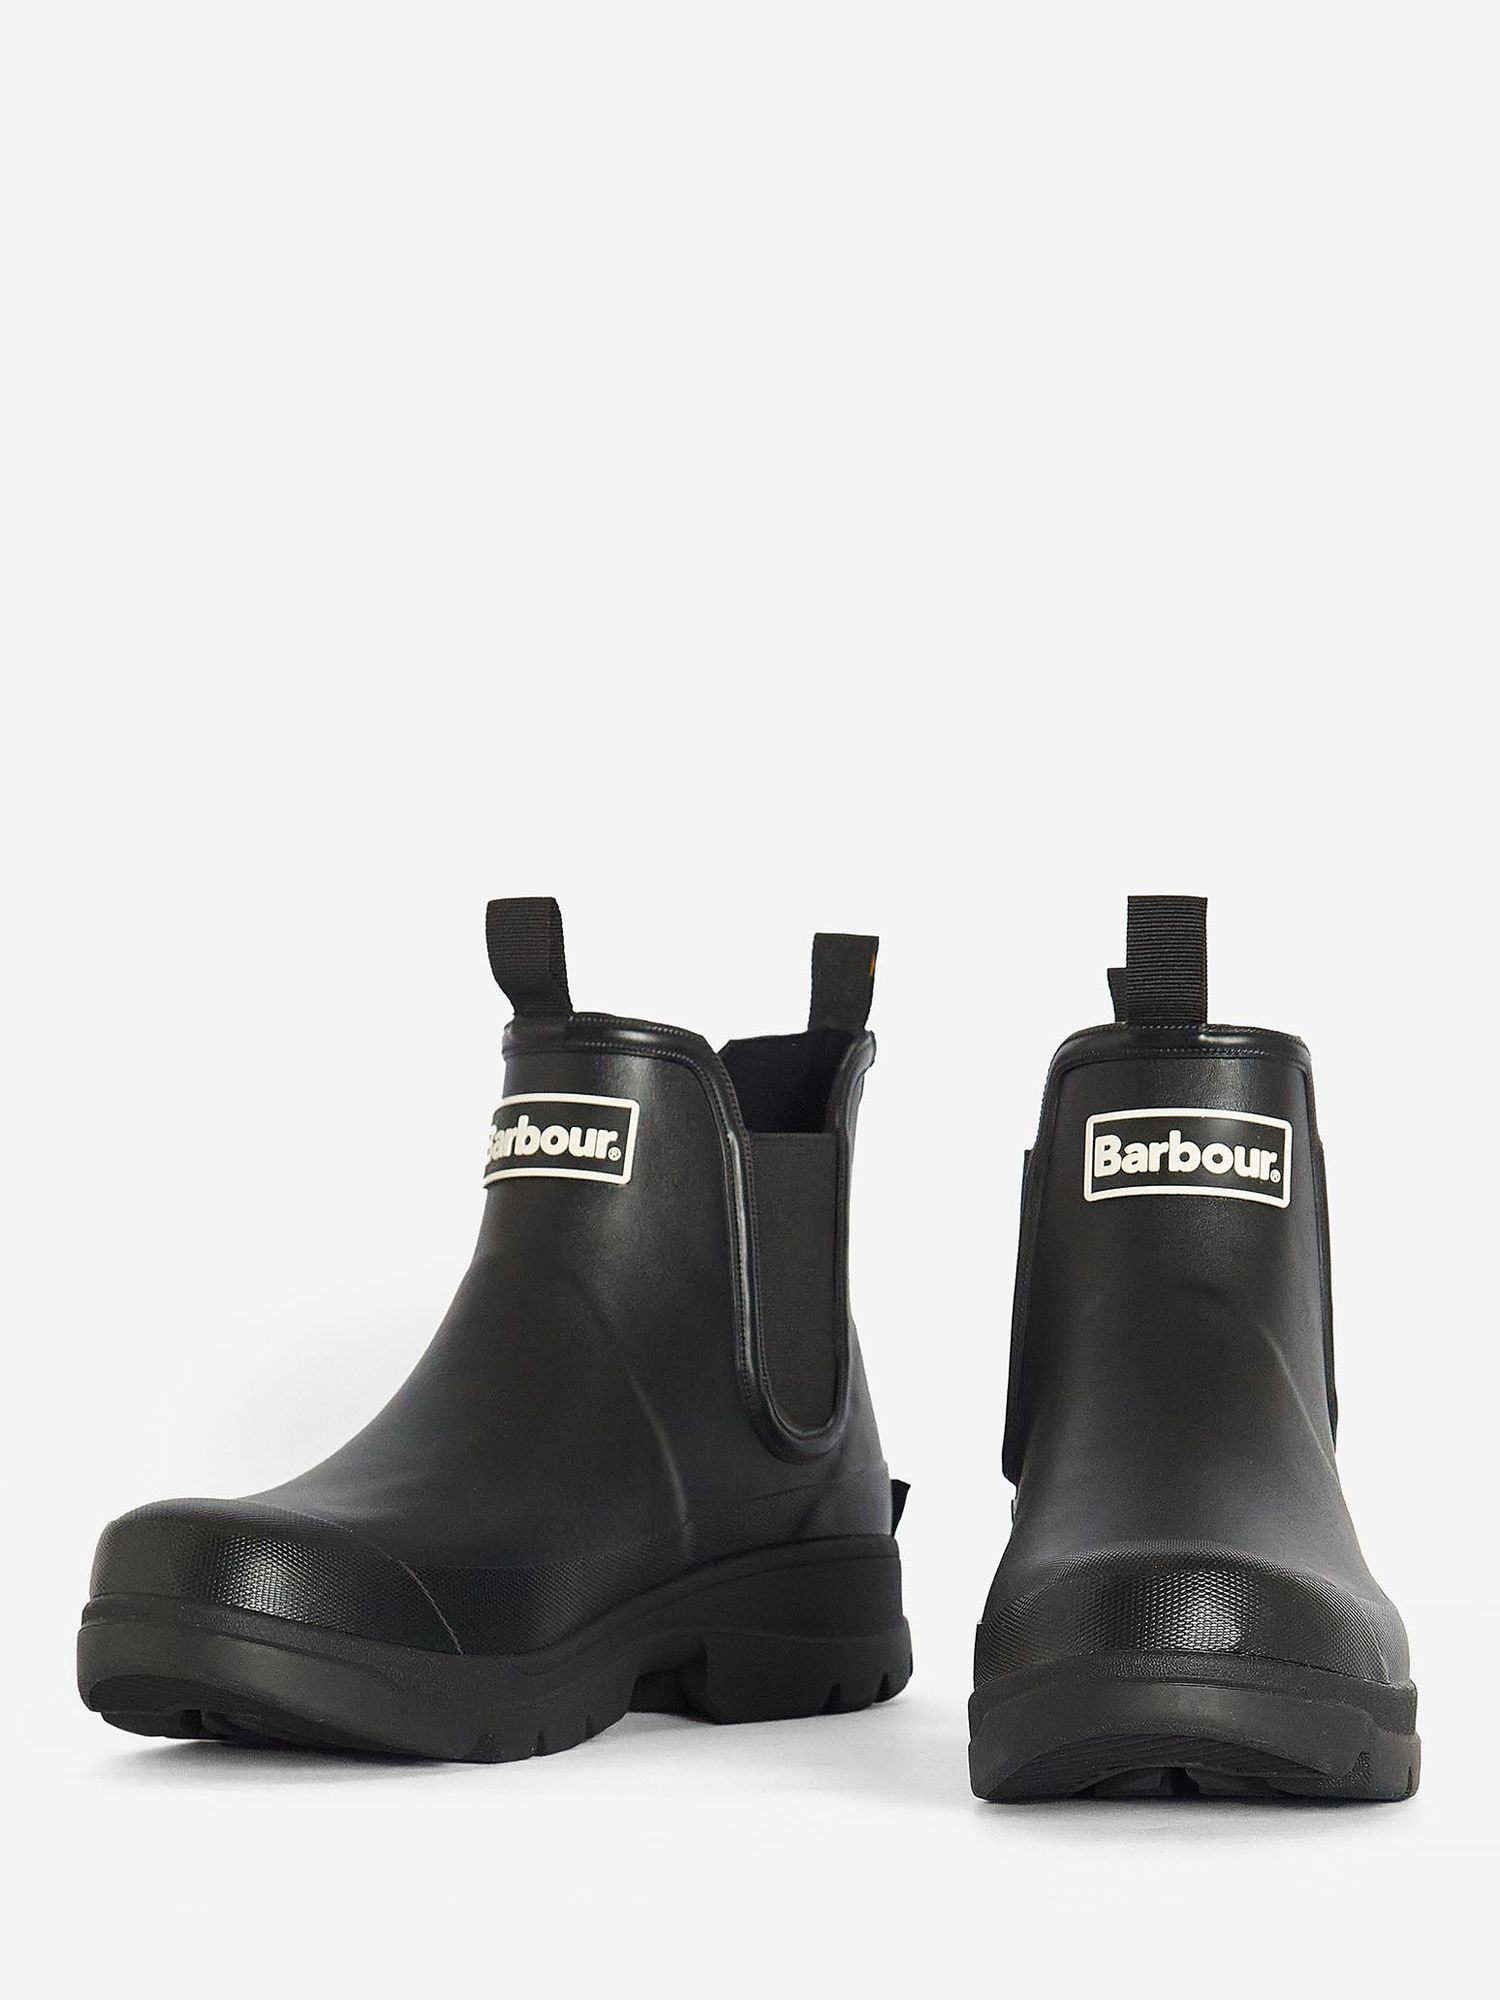 Barbour Nimbus Chelsea Wellington Boots, Black at John Lewis & Partners